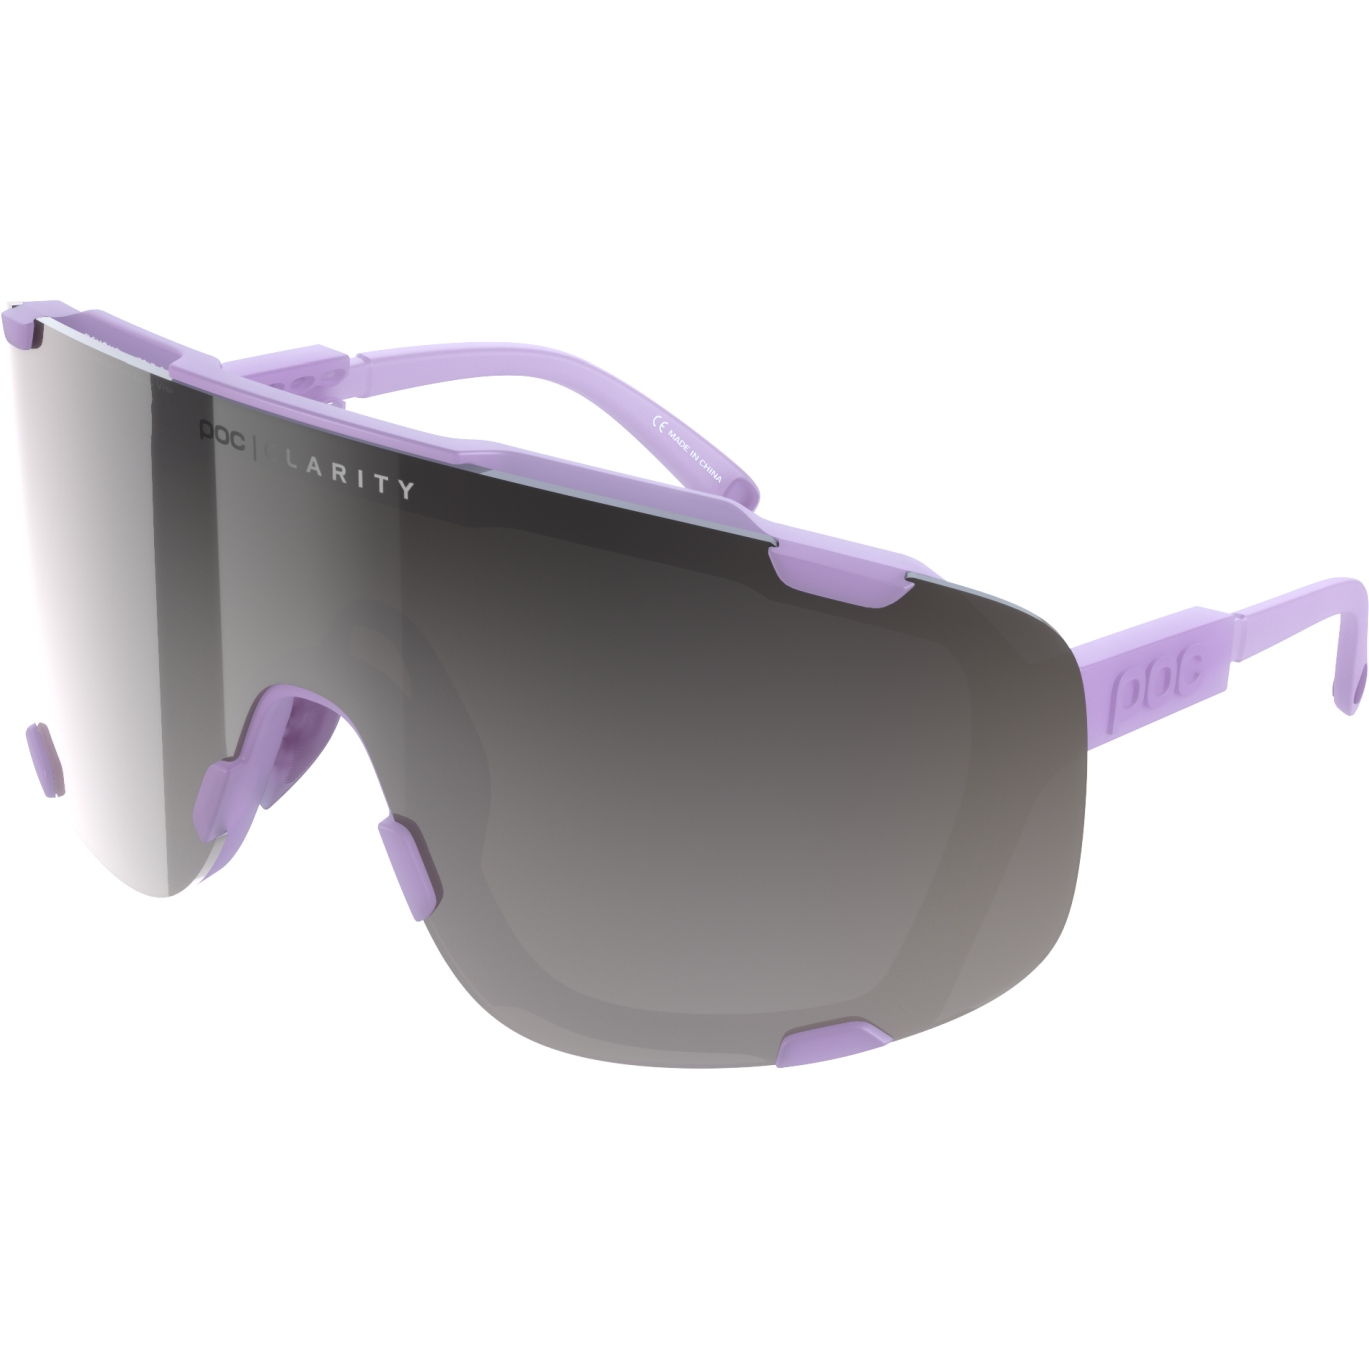 Image of POC Devour Glasses - Mirror Lens - 1619 Purple Quartz Translucent / Violet/Silver + Clear